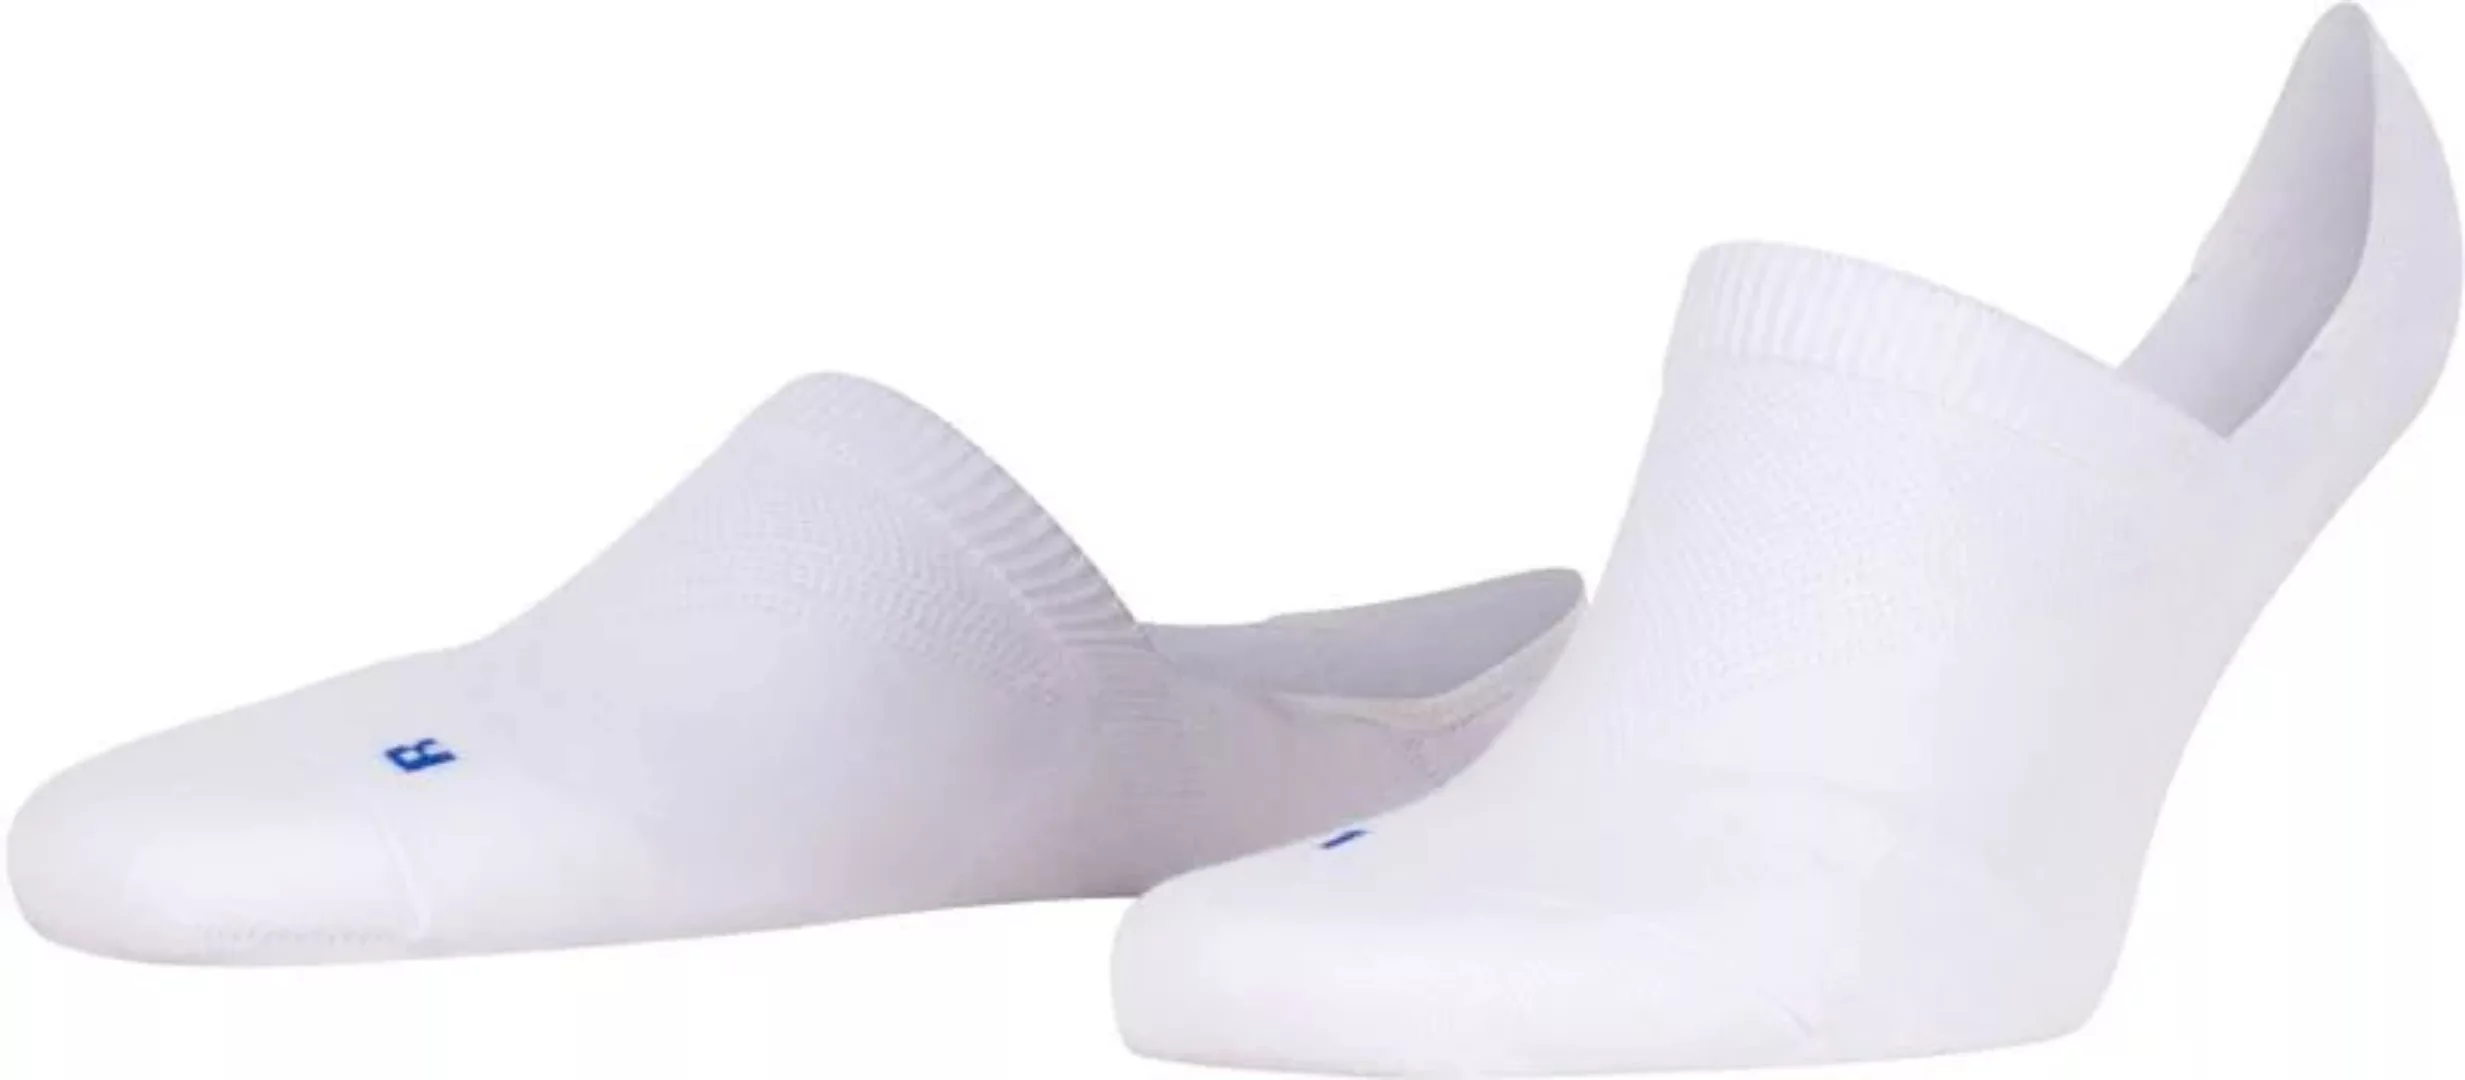 FALKE Cool Kick Antslip Socken Weiß - Größe 37-38 günstig online kaufen